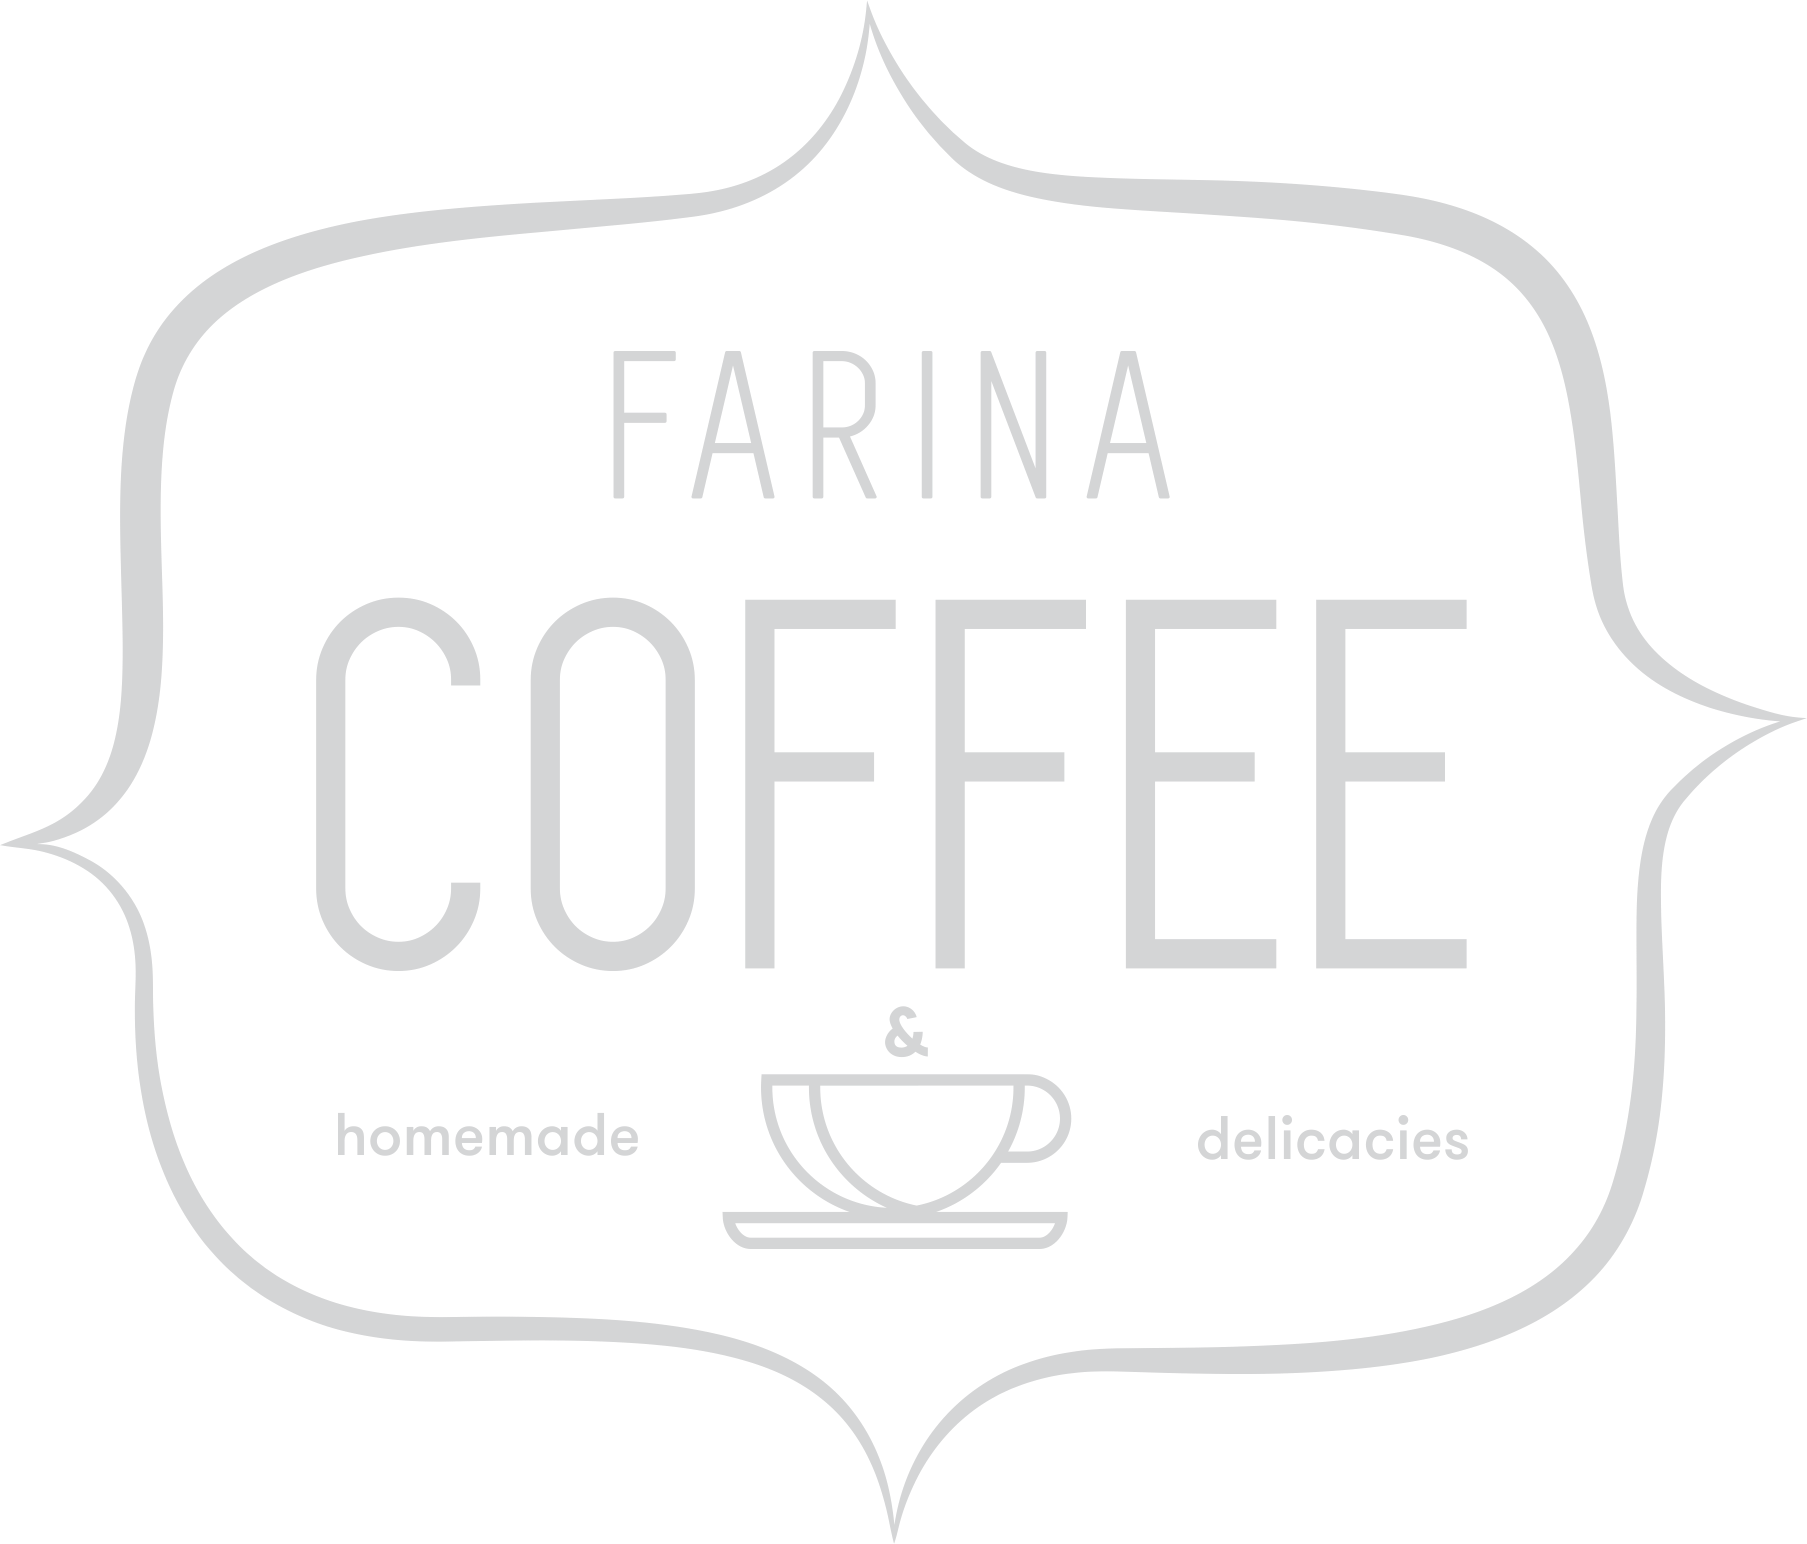 Farina Coffe